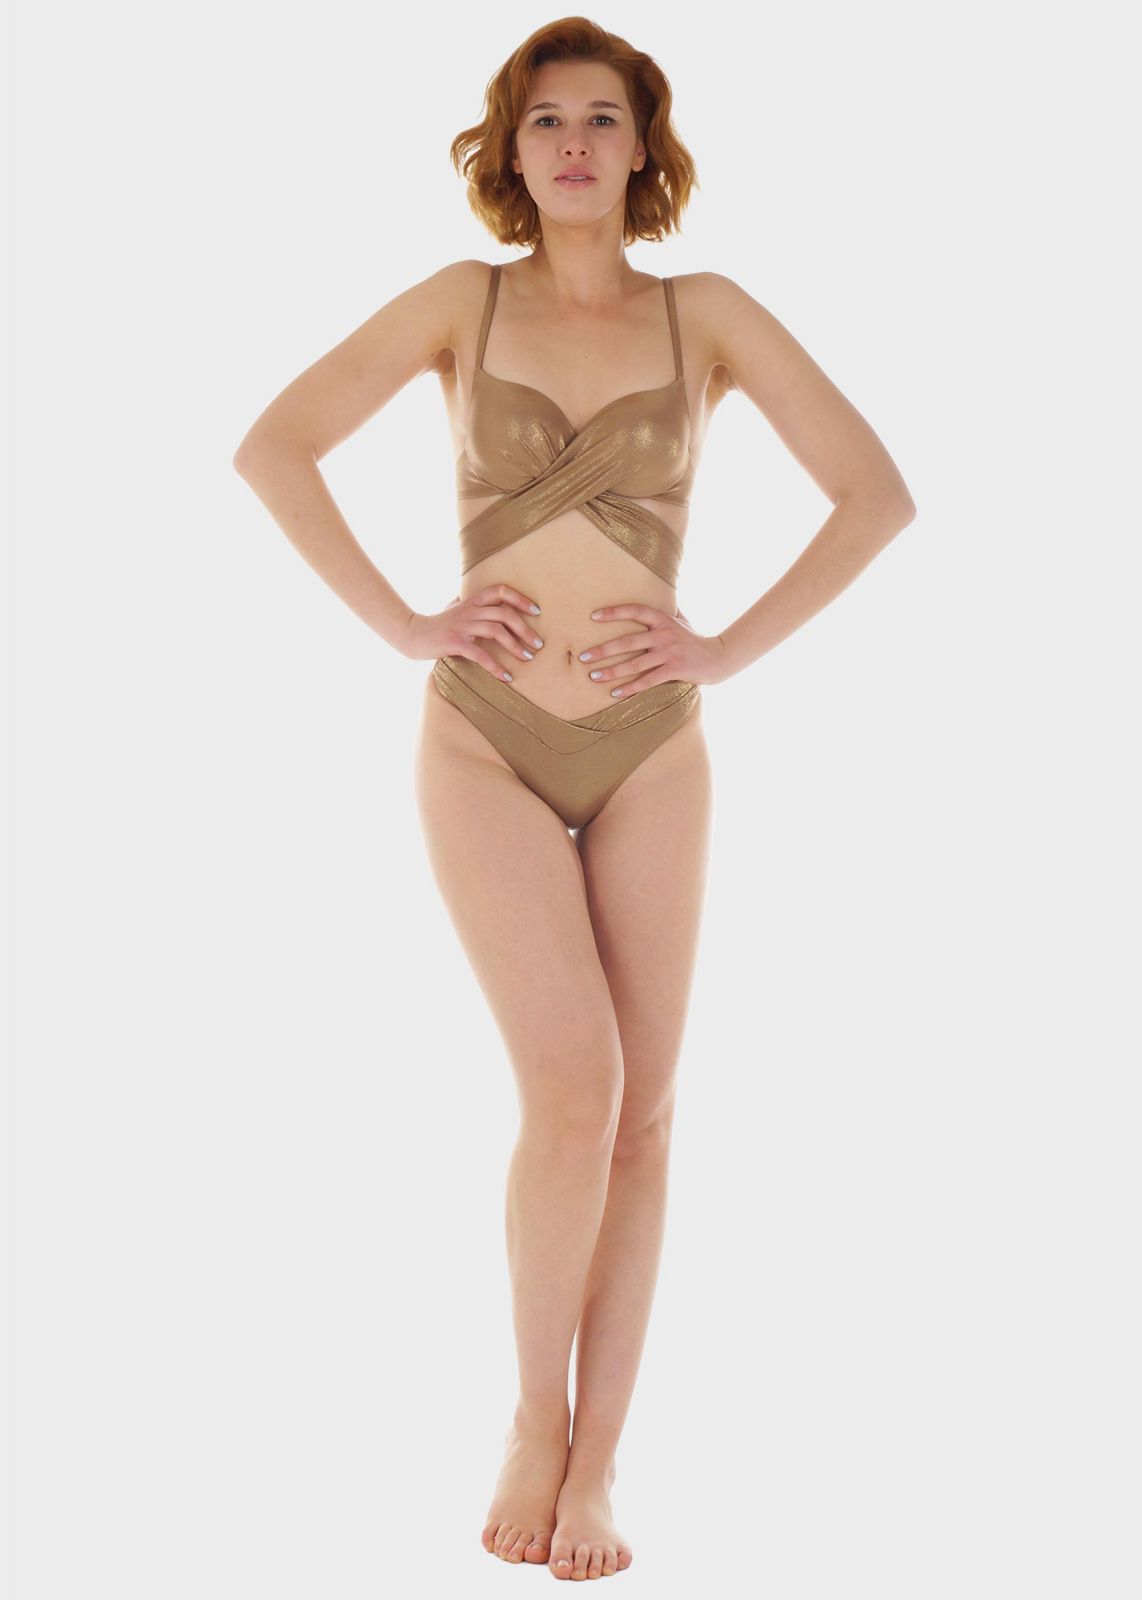 Γυναικείο σετ μαγιό bikini μπροστινό δέσιμο ενσωματωμένη ενίσχυση slip κανονική γραμμή.Καλύπτει C Cup ΜΠΡΟΝΖΕ